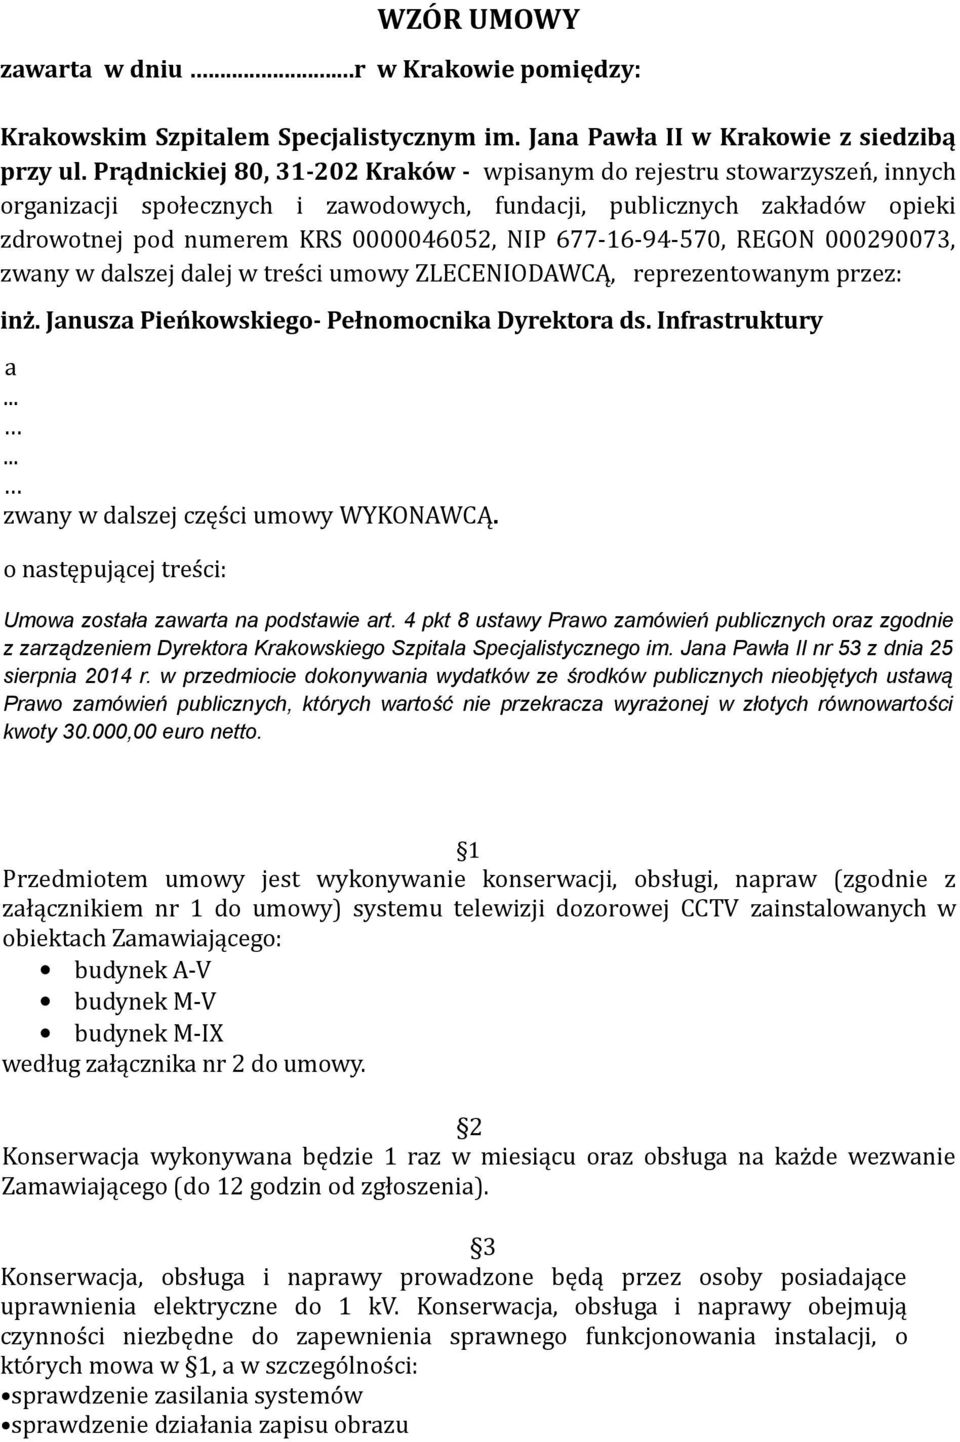 677-16-94-570, REGON 000290073, zwany w dalszej dalej w treści umowy ZLECENIODAWCĄ, reprezentowanym przez: inż. Janusza Pieńkowskiego- Pełnomocnika Dyrektora ds. Infrastruktury a.